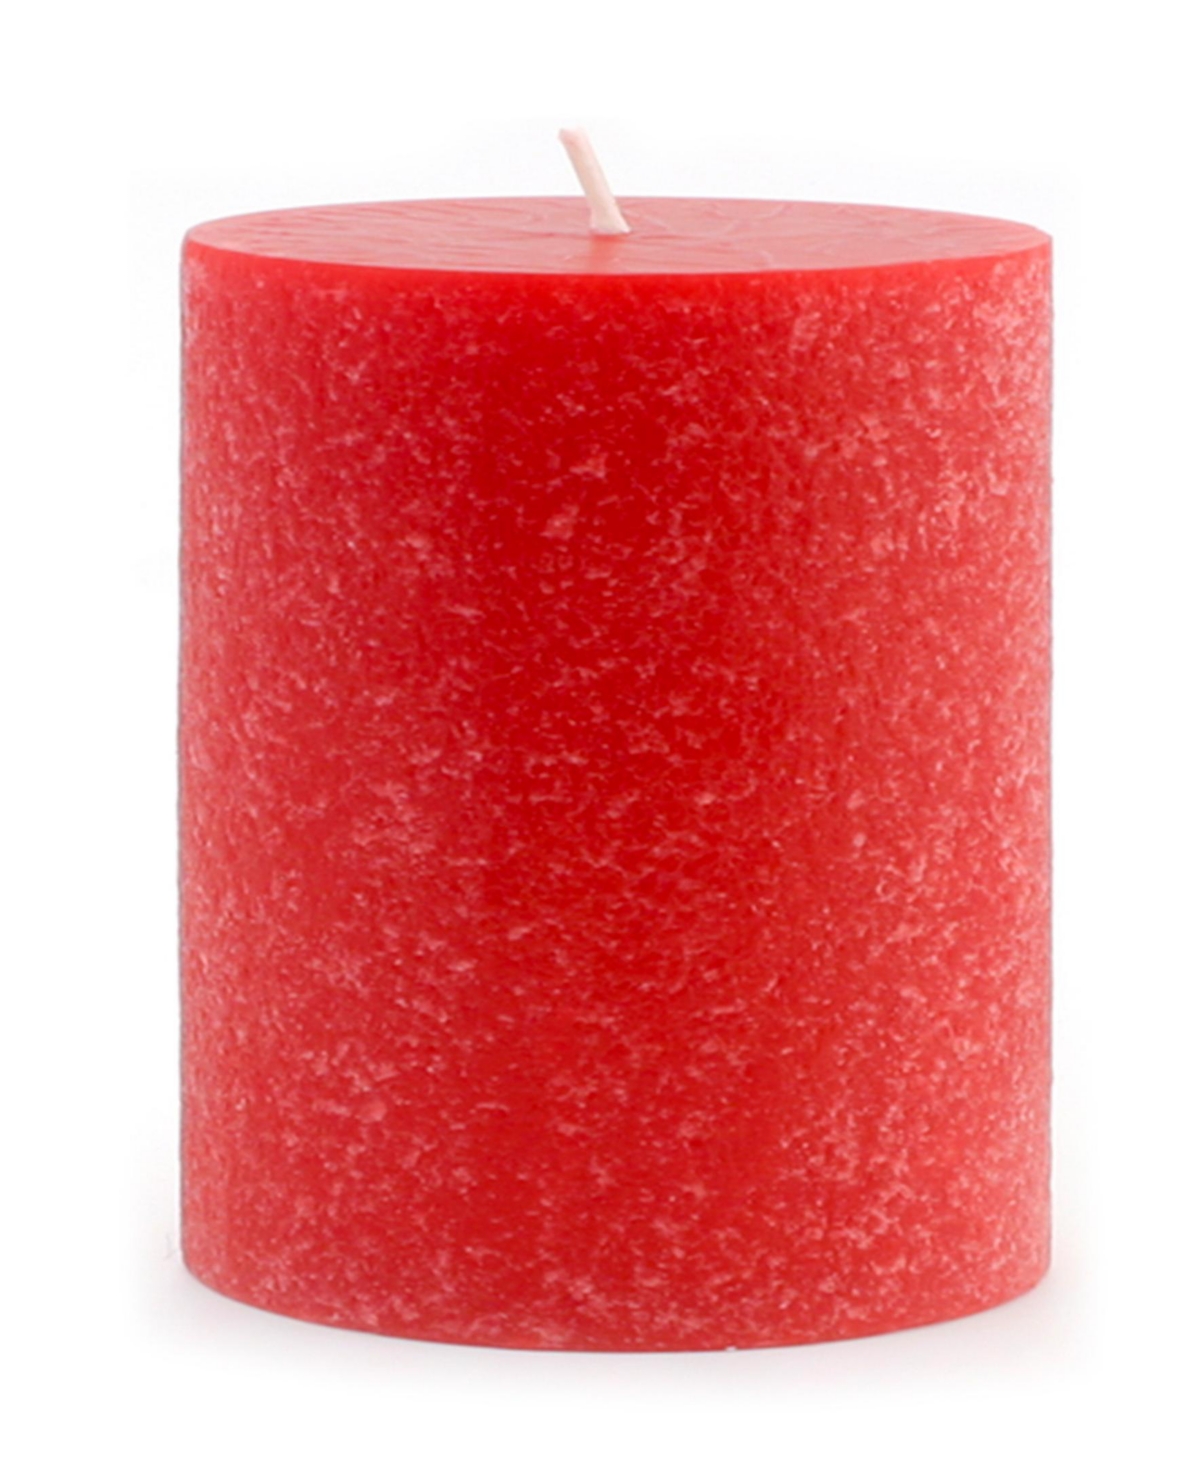 Timberline Pillar Candle, 4" x 4" - Garnet